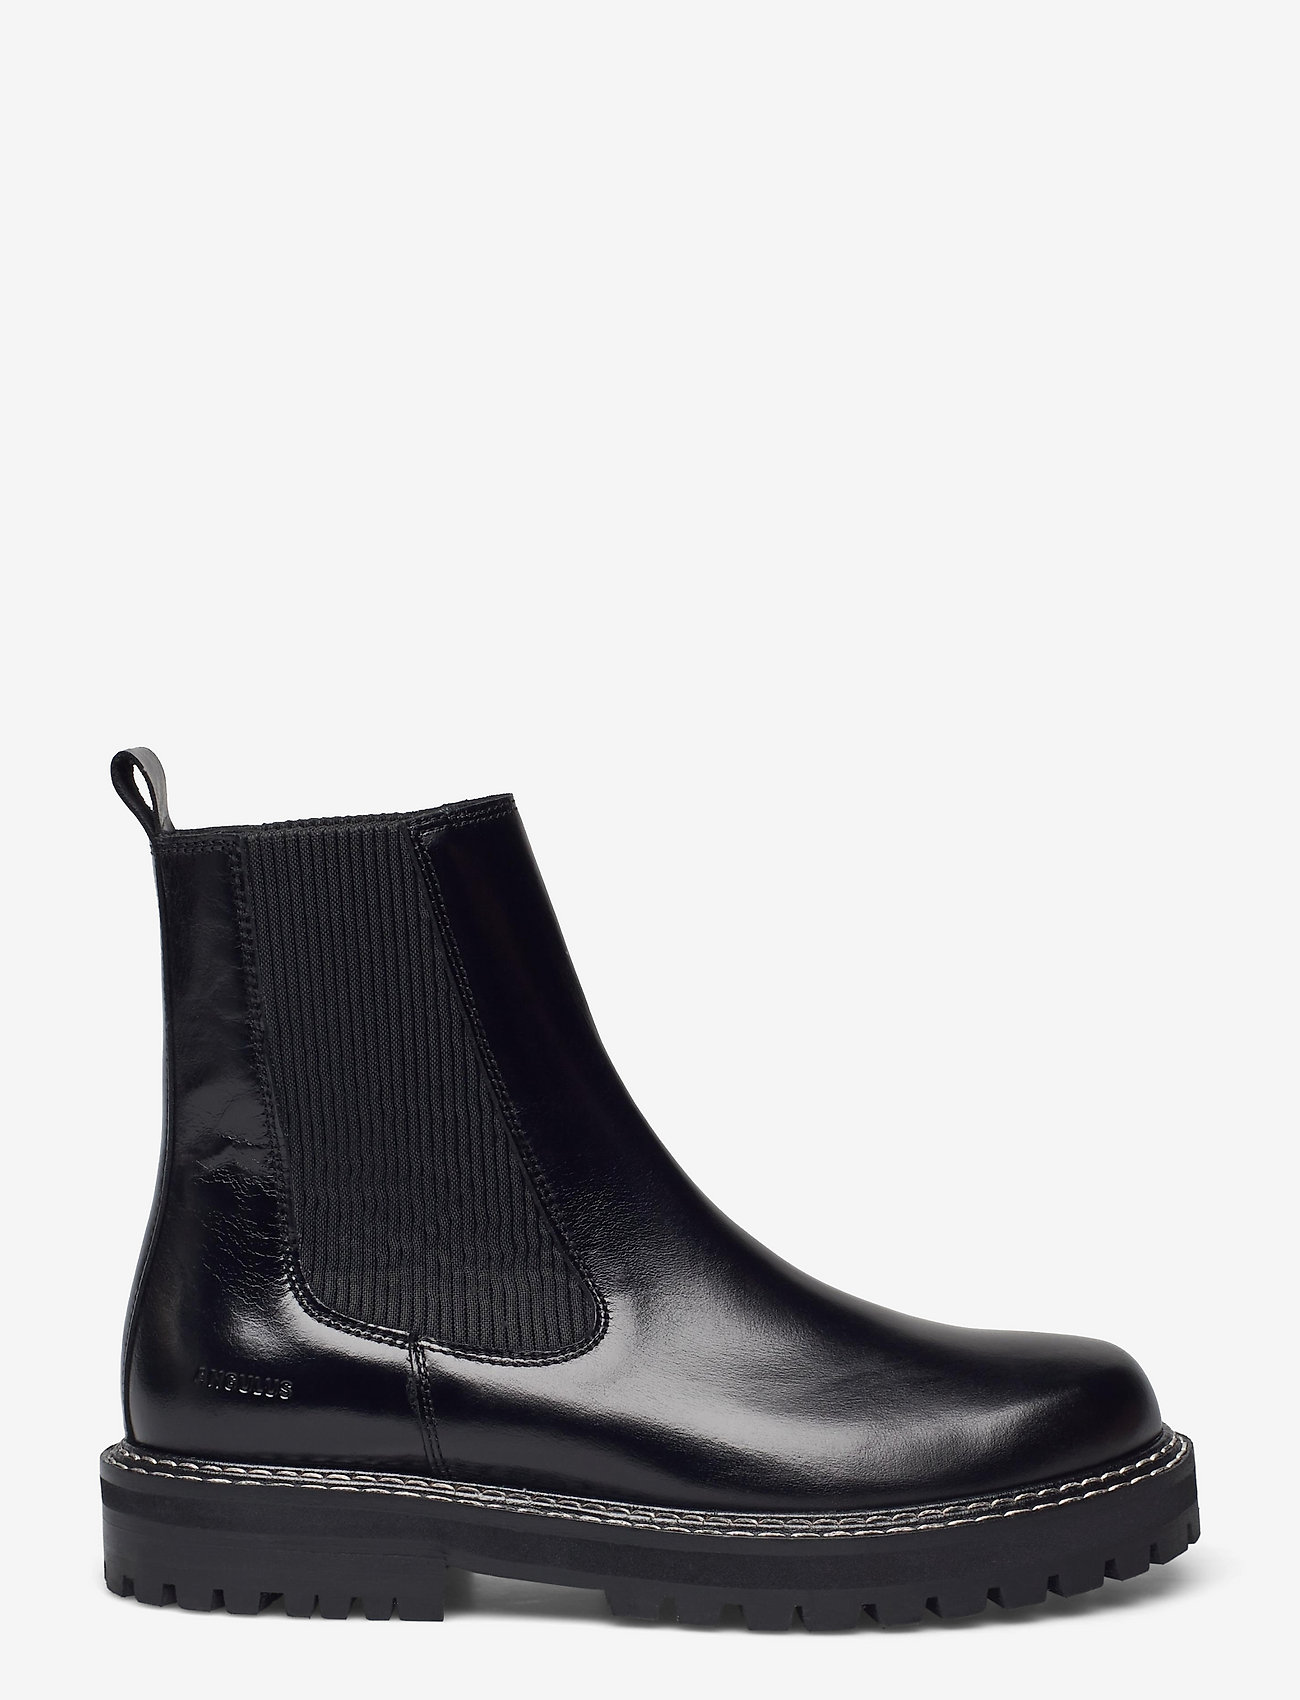 ANGULUS - Boots - flat - chelsea boots - 1835/019 black /black - 1